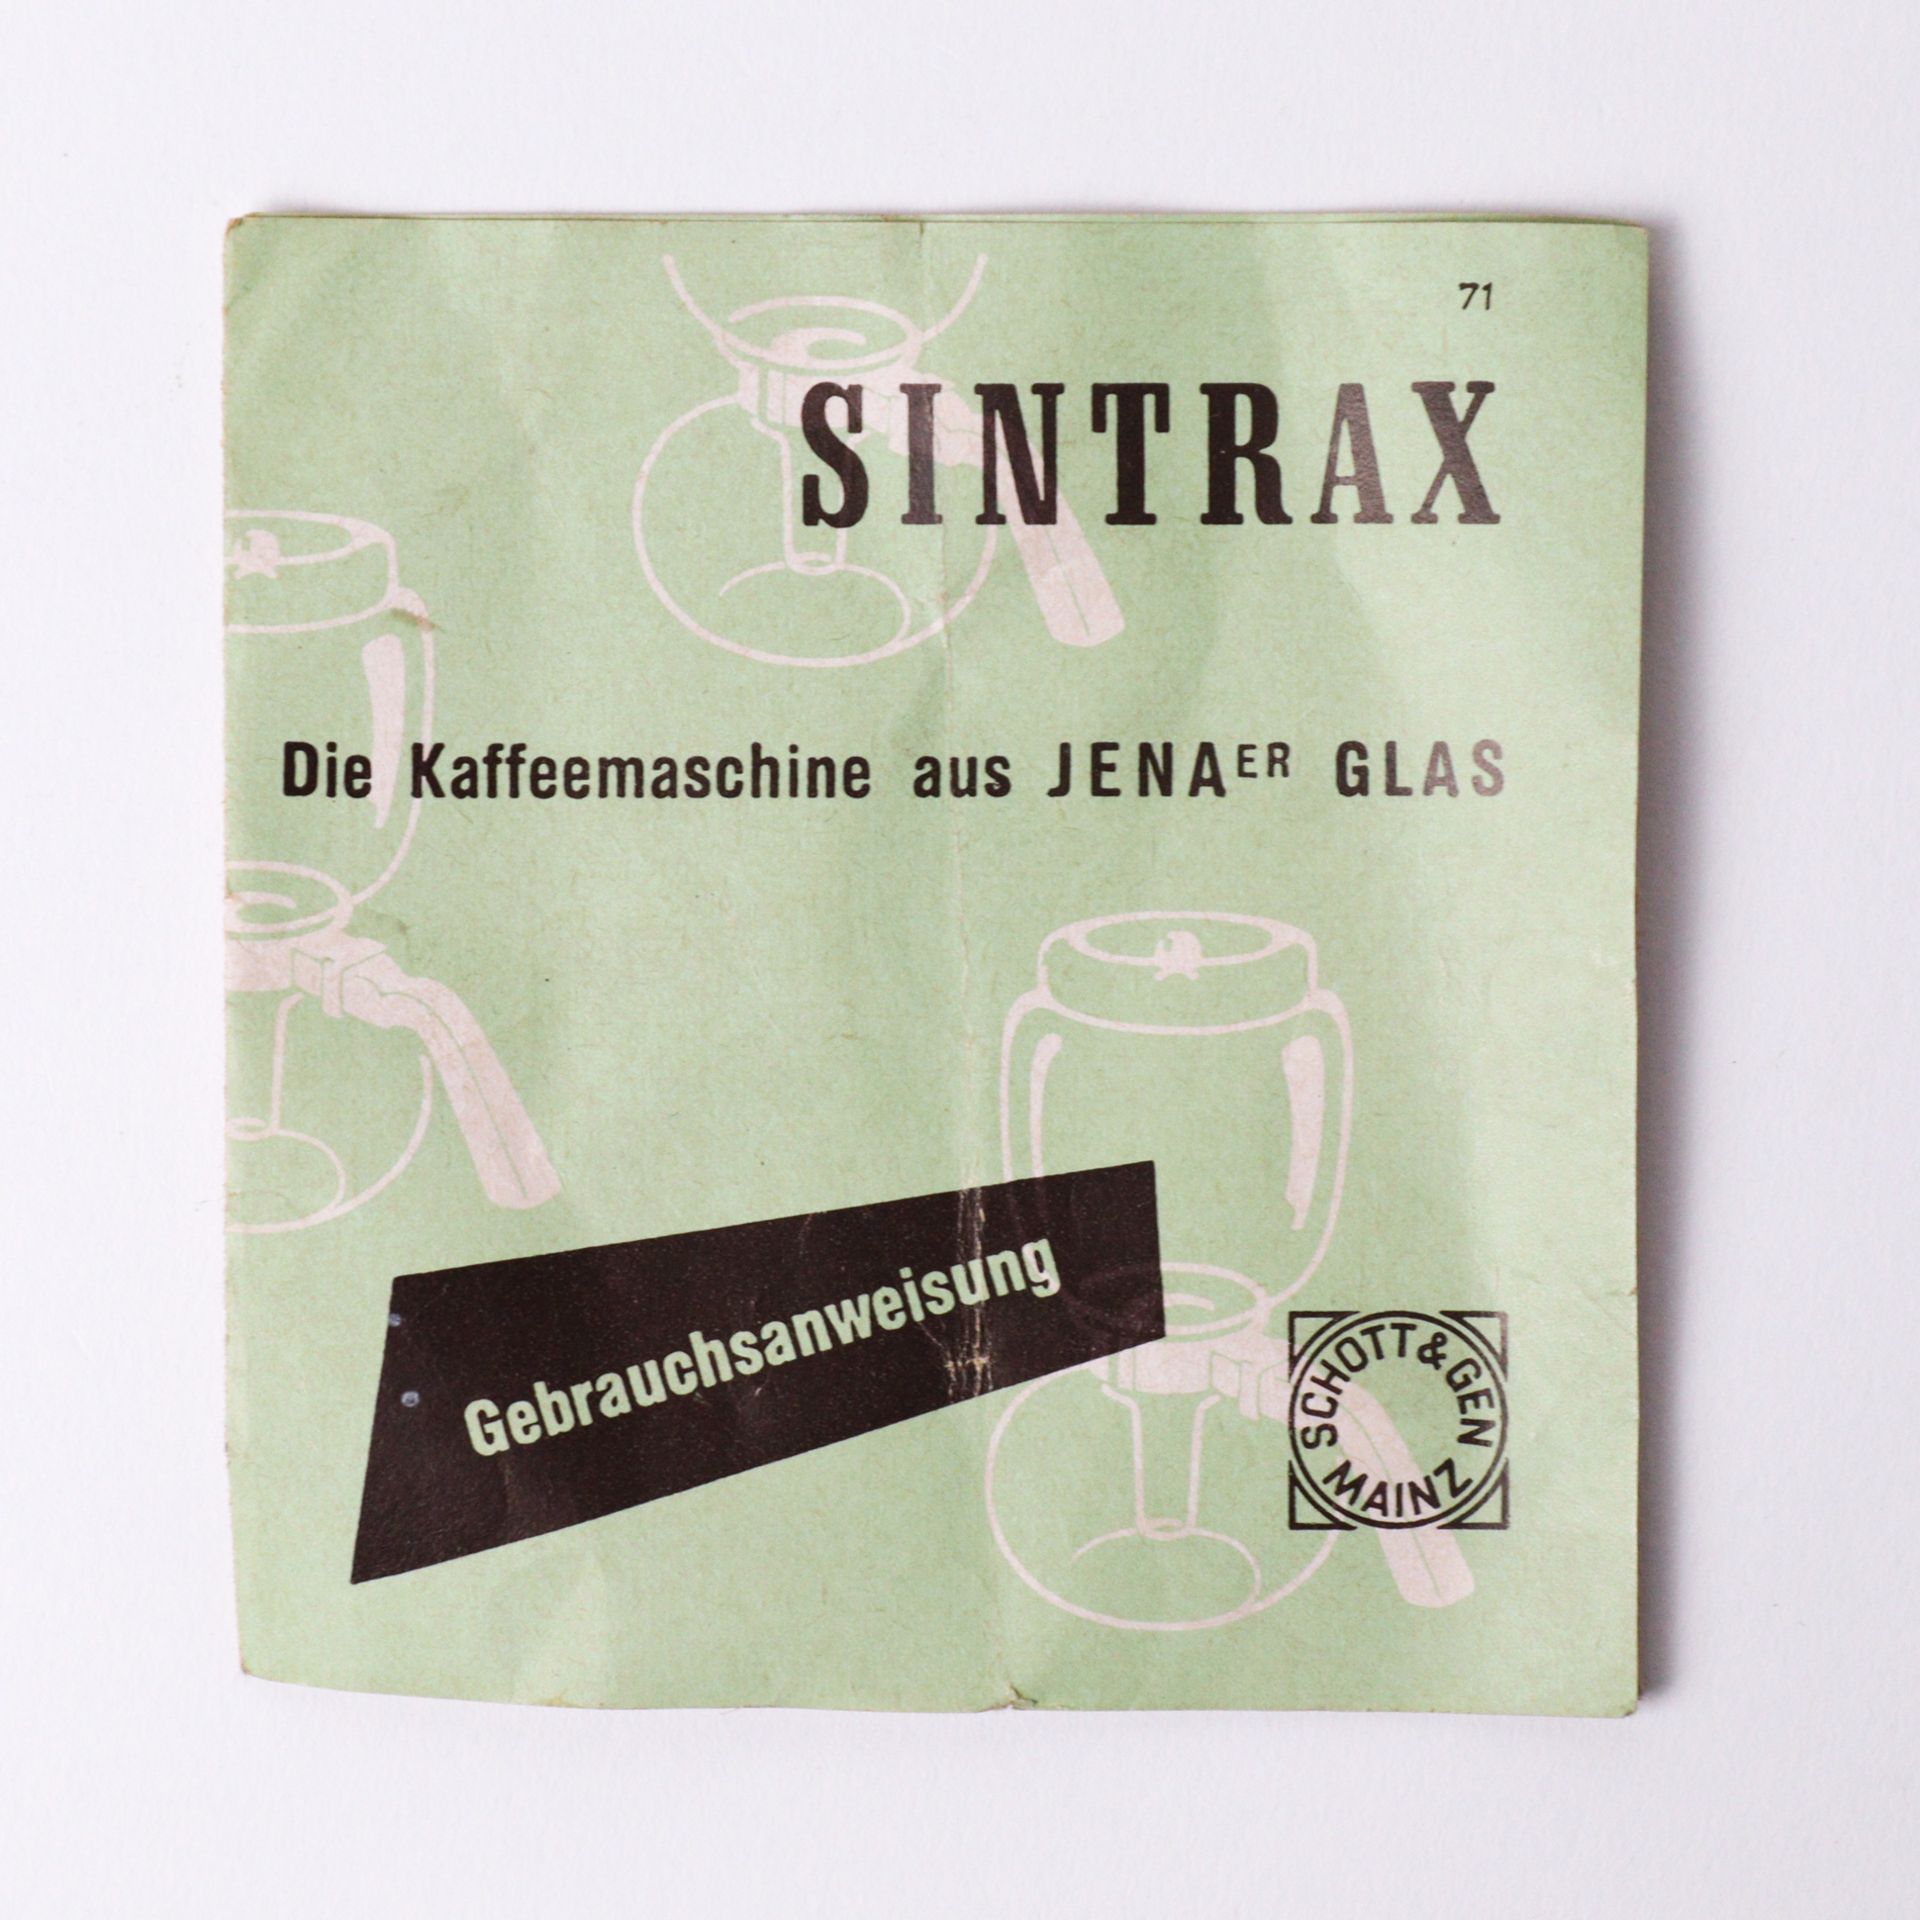 Design - Sintrax - Kaffeemaschine - Image 6 of 7